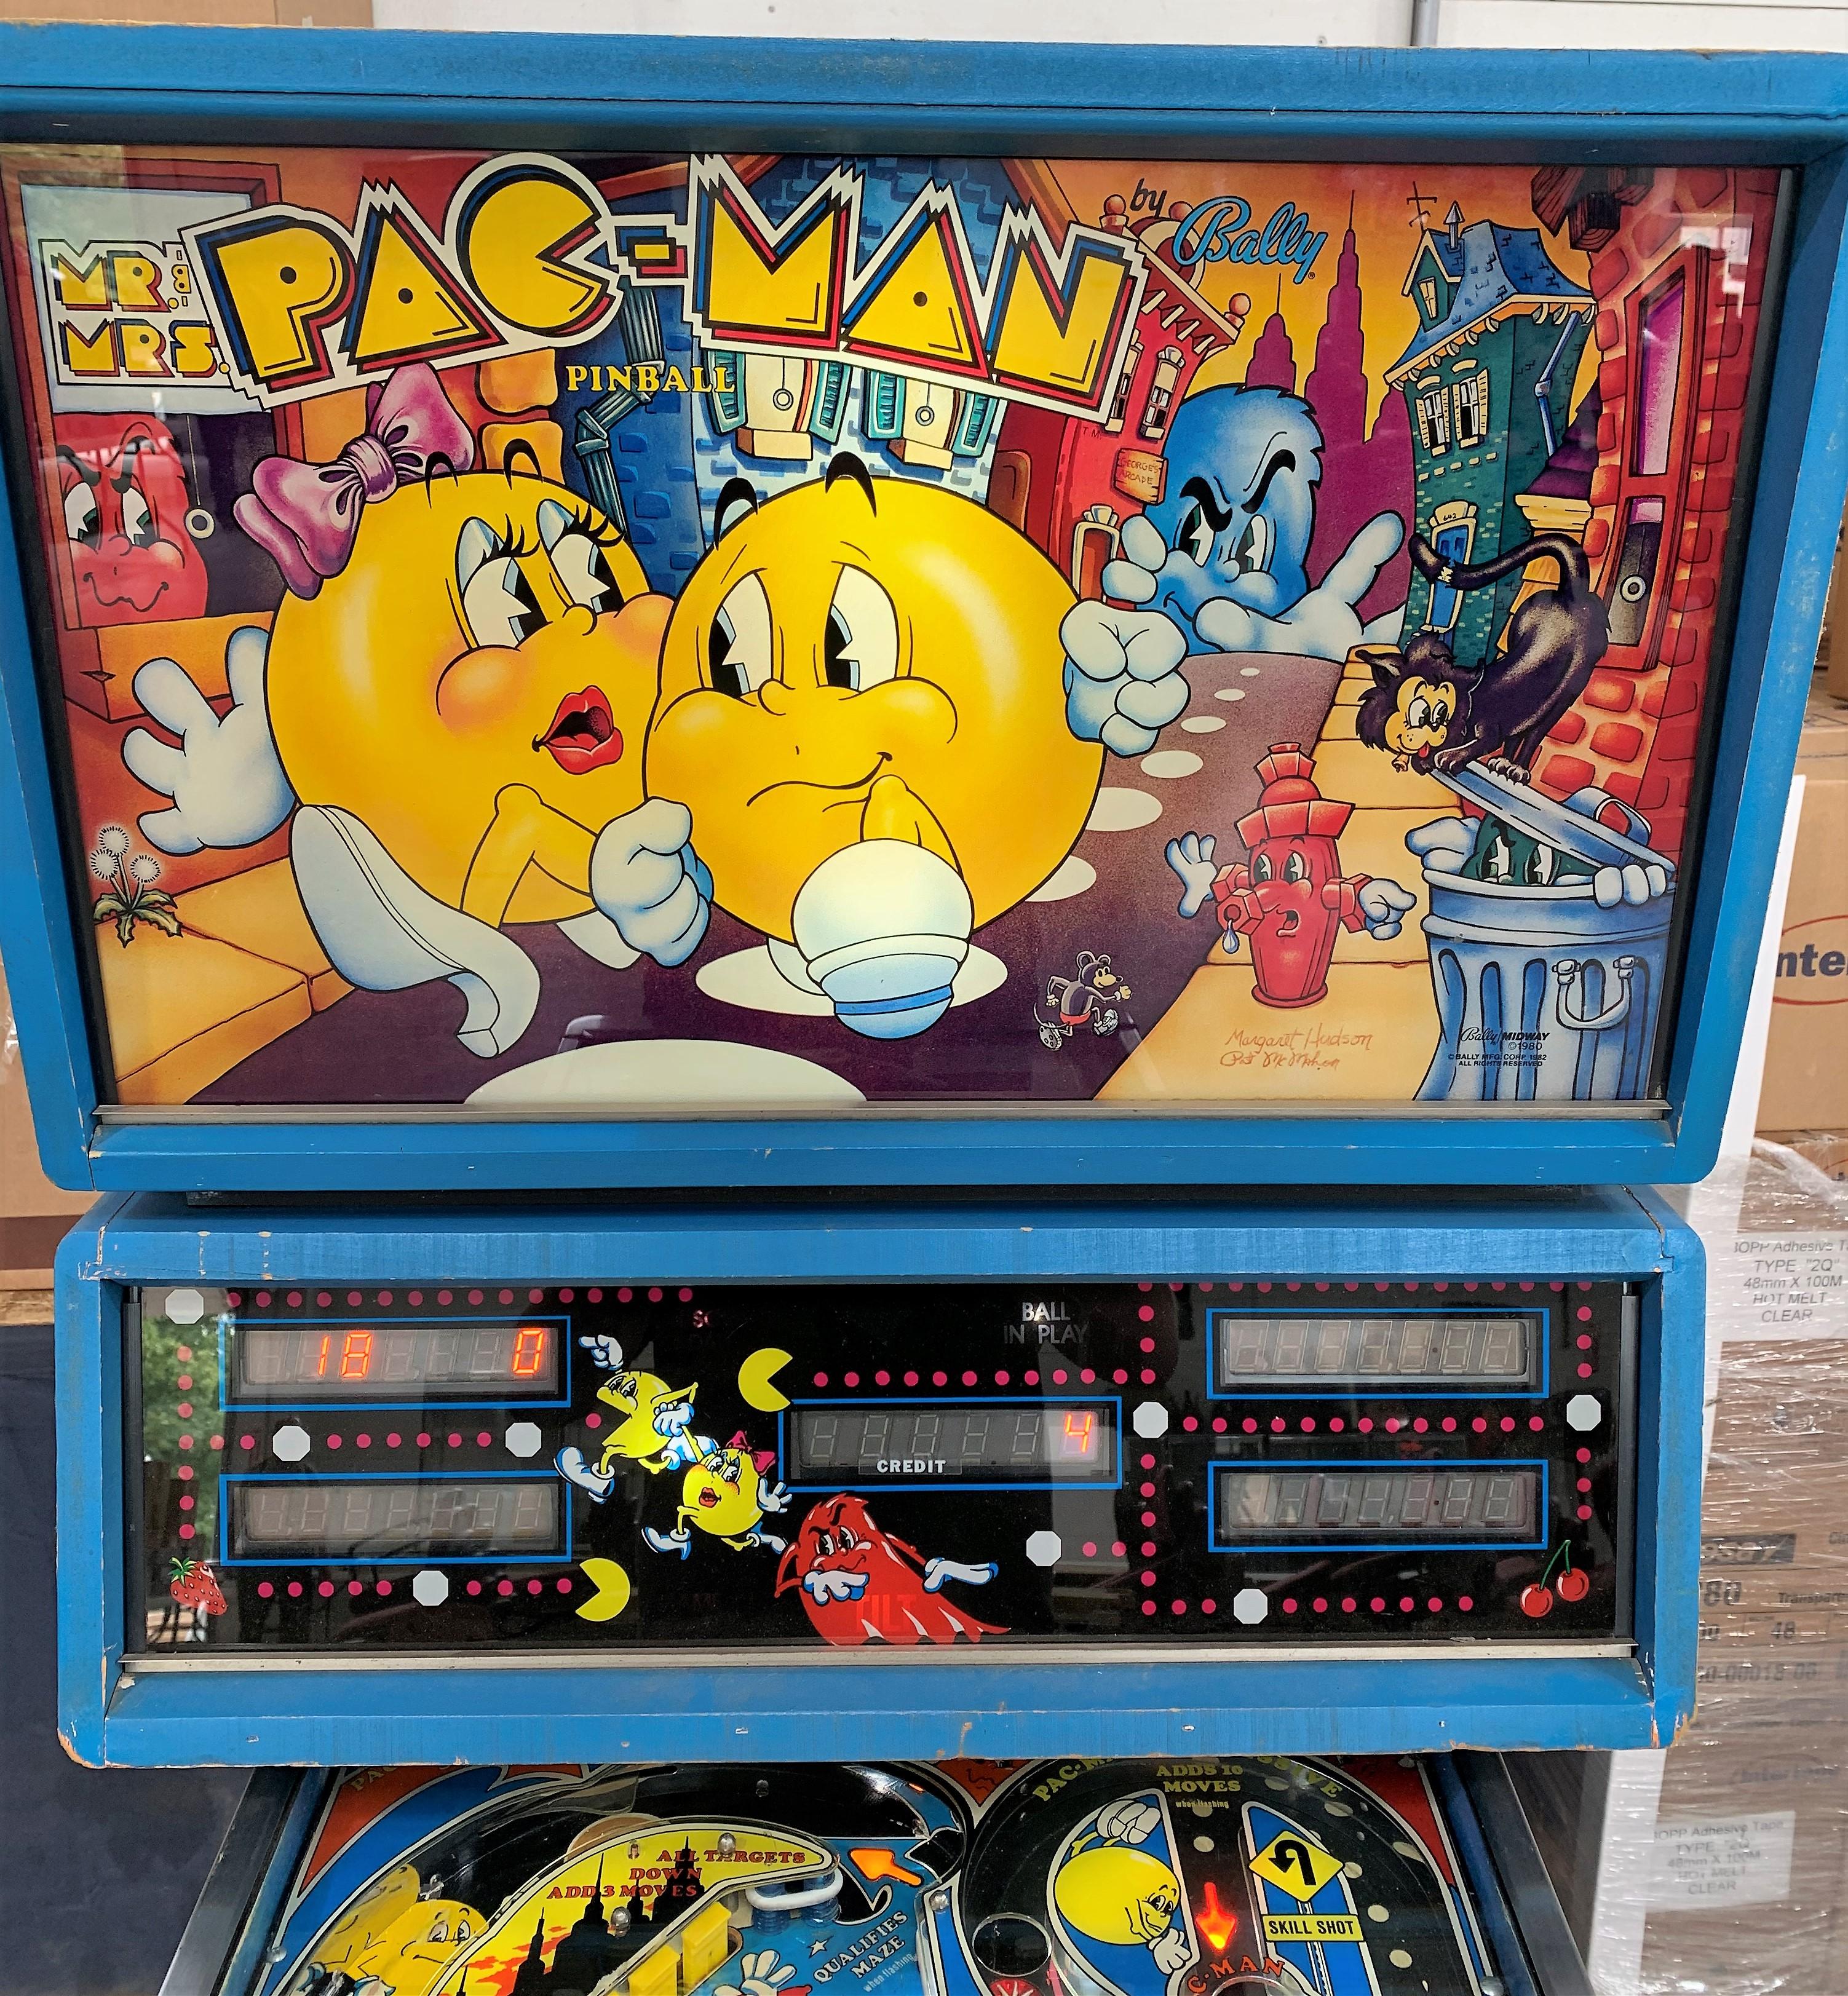 "Mr & Mrs Pac-man" Pinball by Bally